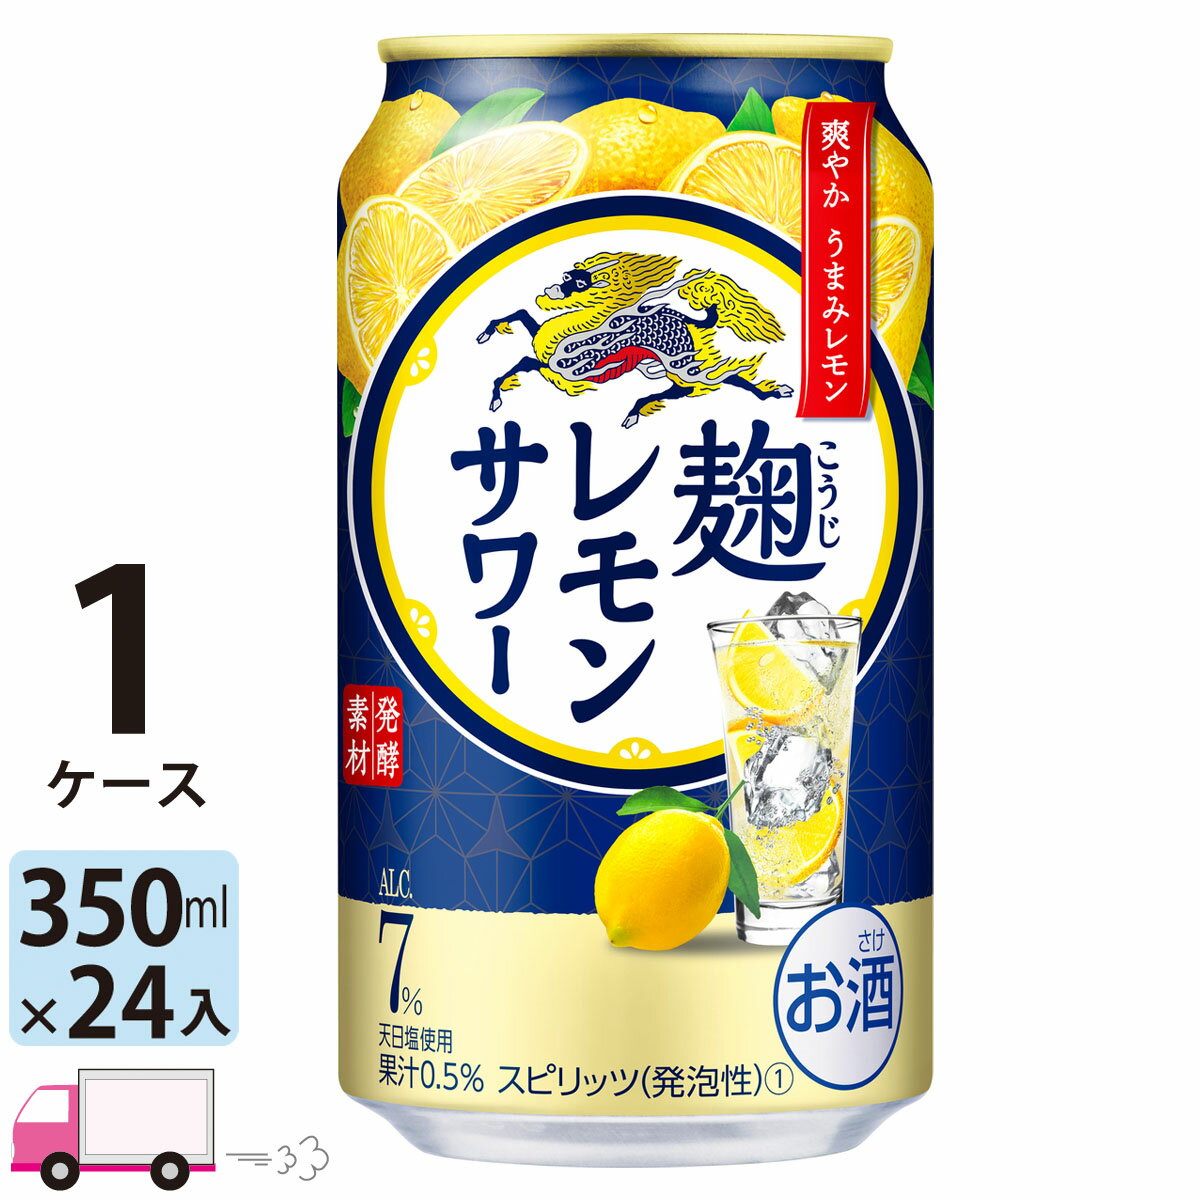 キリン『麹レモンサワー』